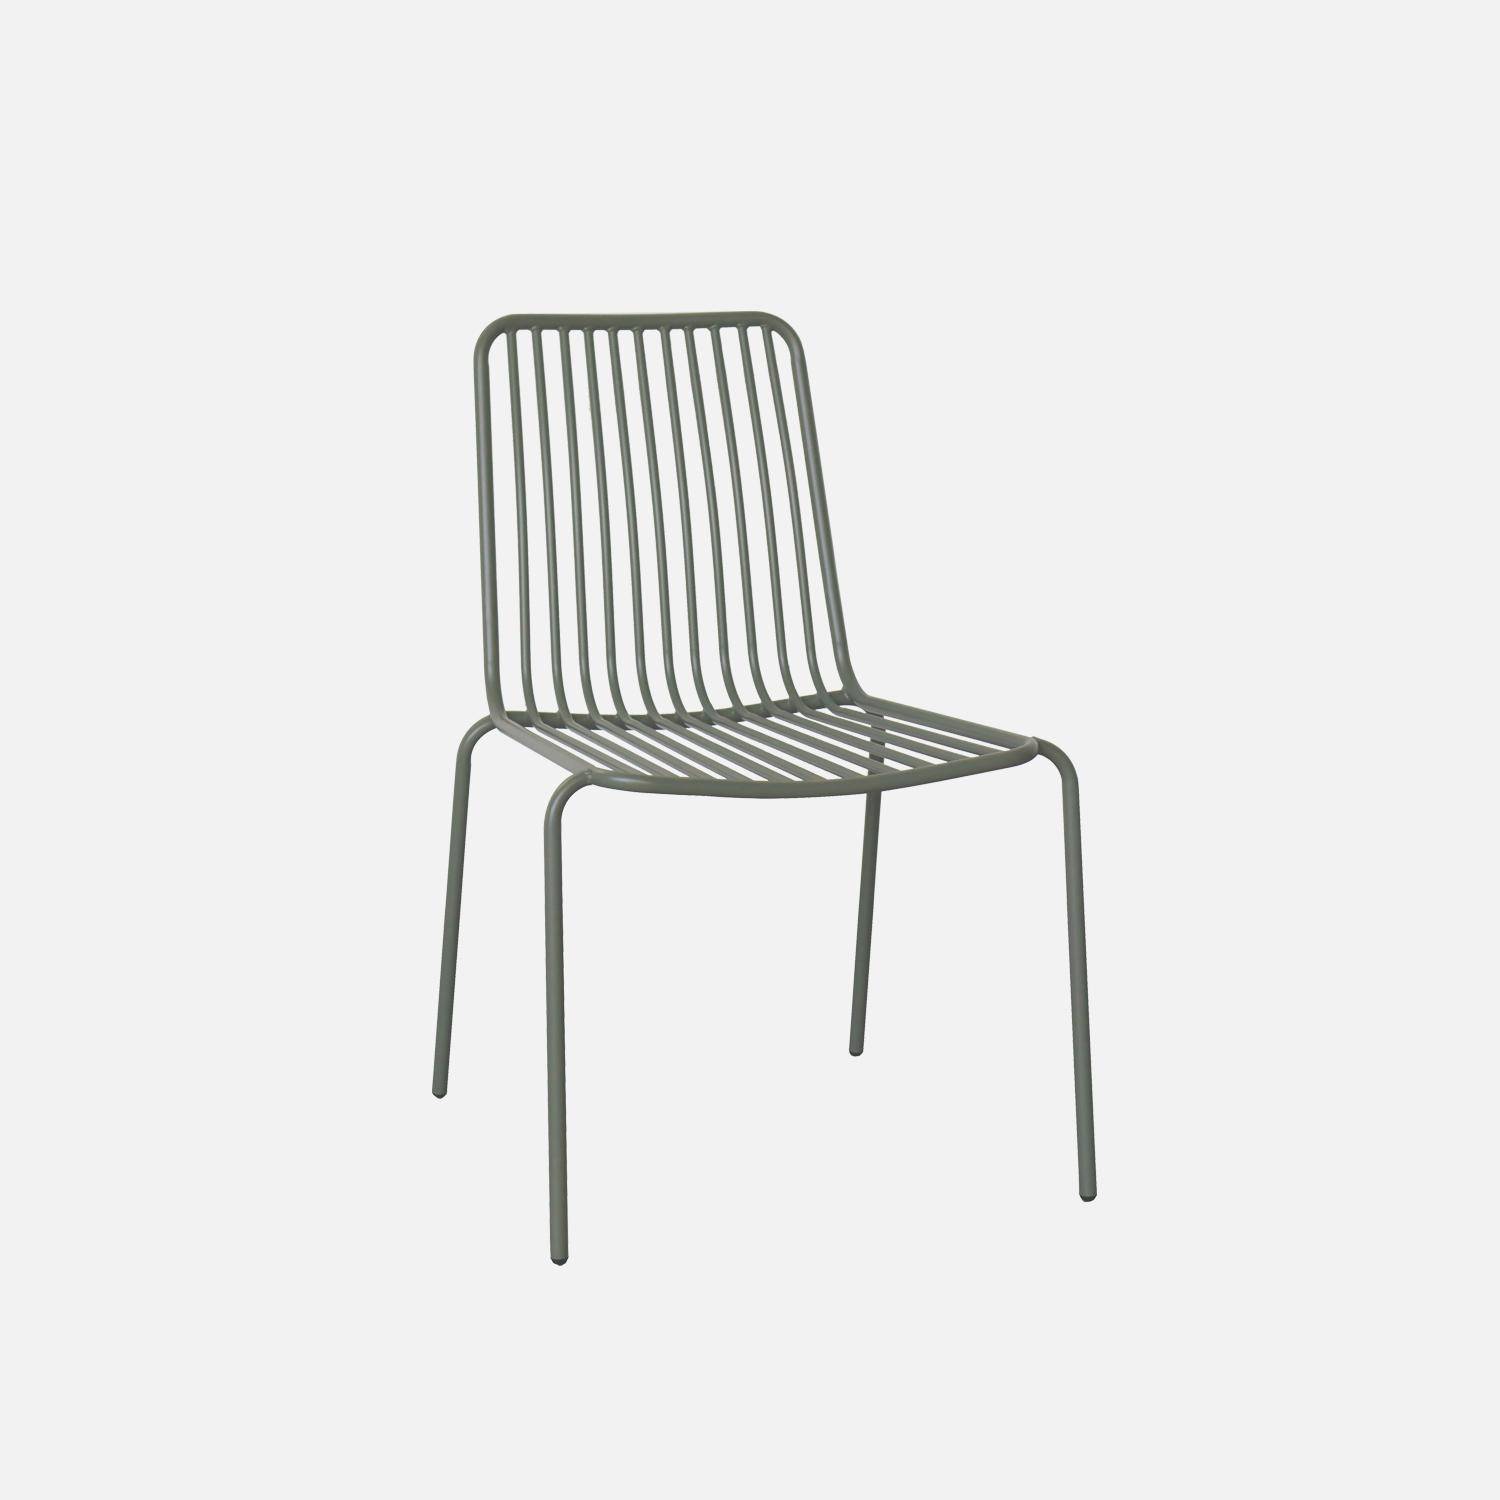 Lot de 2 chaises de jardin en acier savane, empilables, design linéaire  Photo2